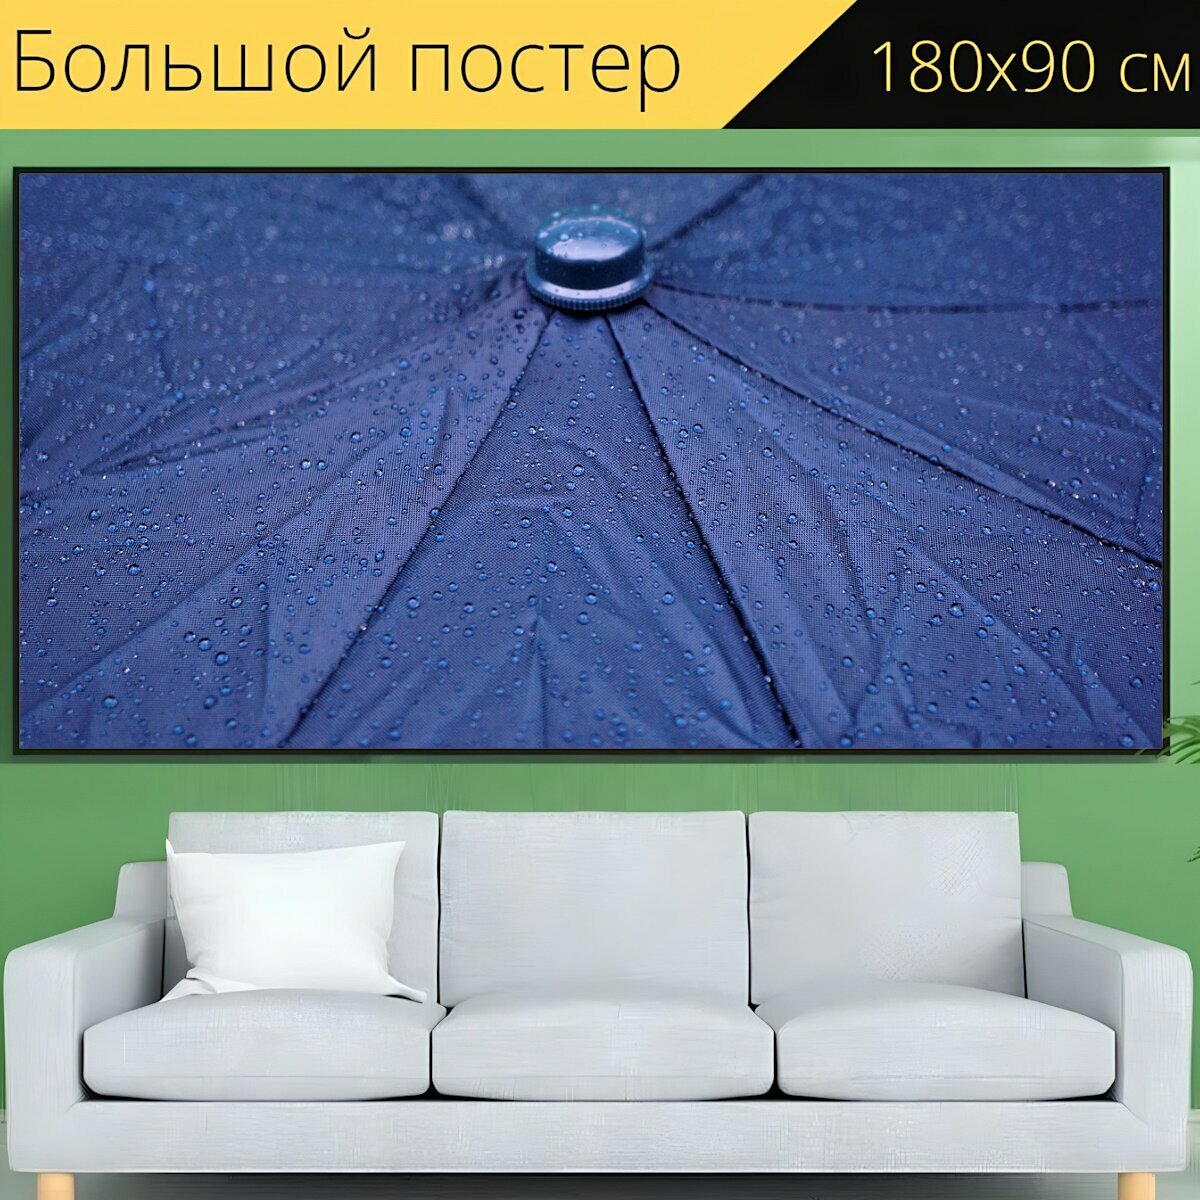 Большой постер "Дождь, зонтик, капли дождя" 180 x 90 см. для интерьера